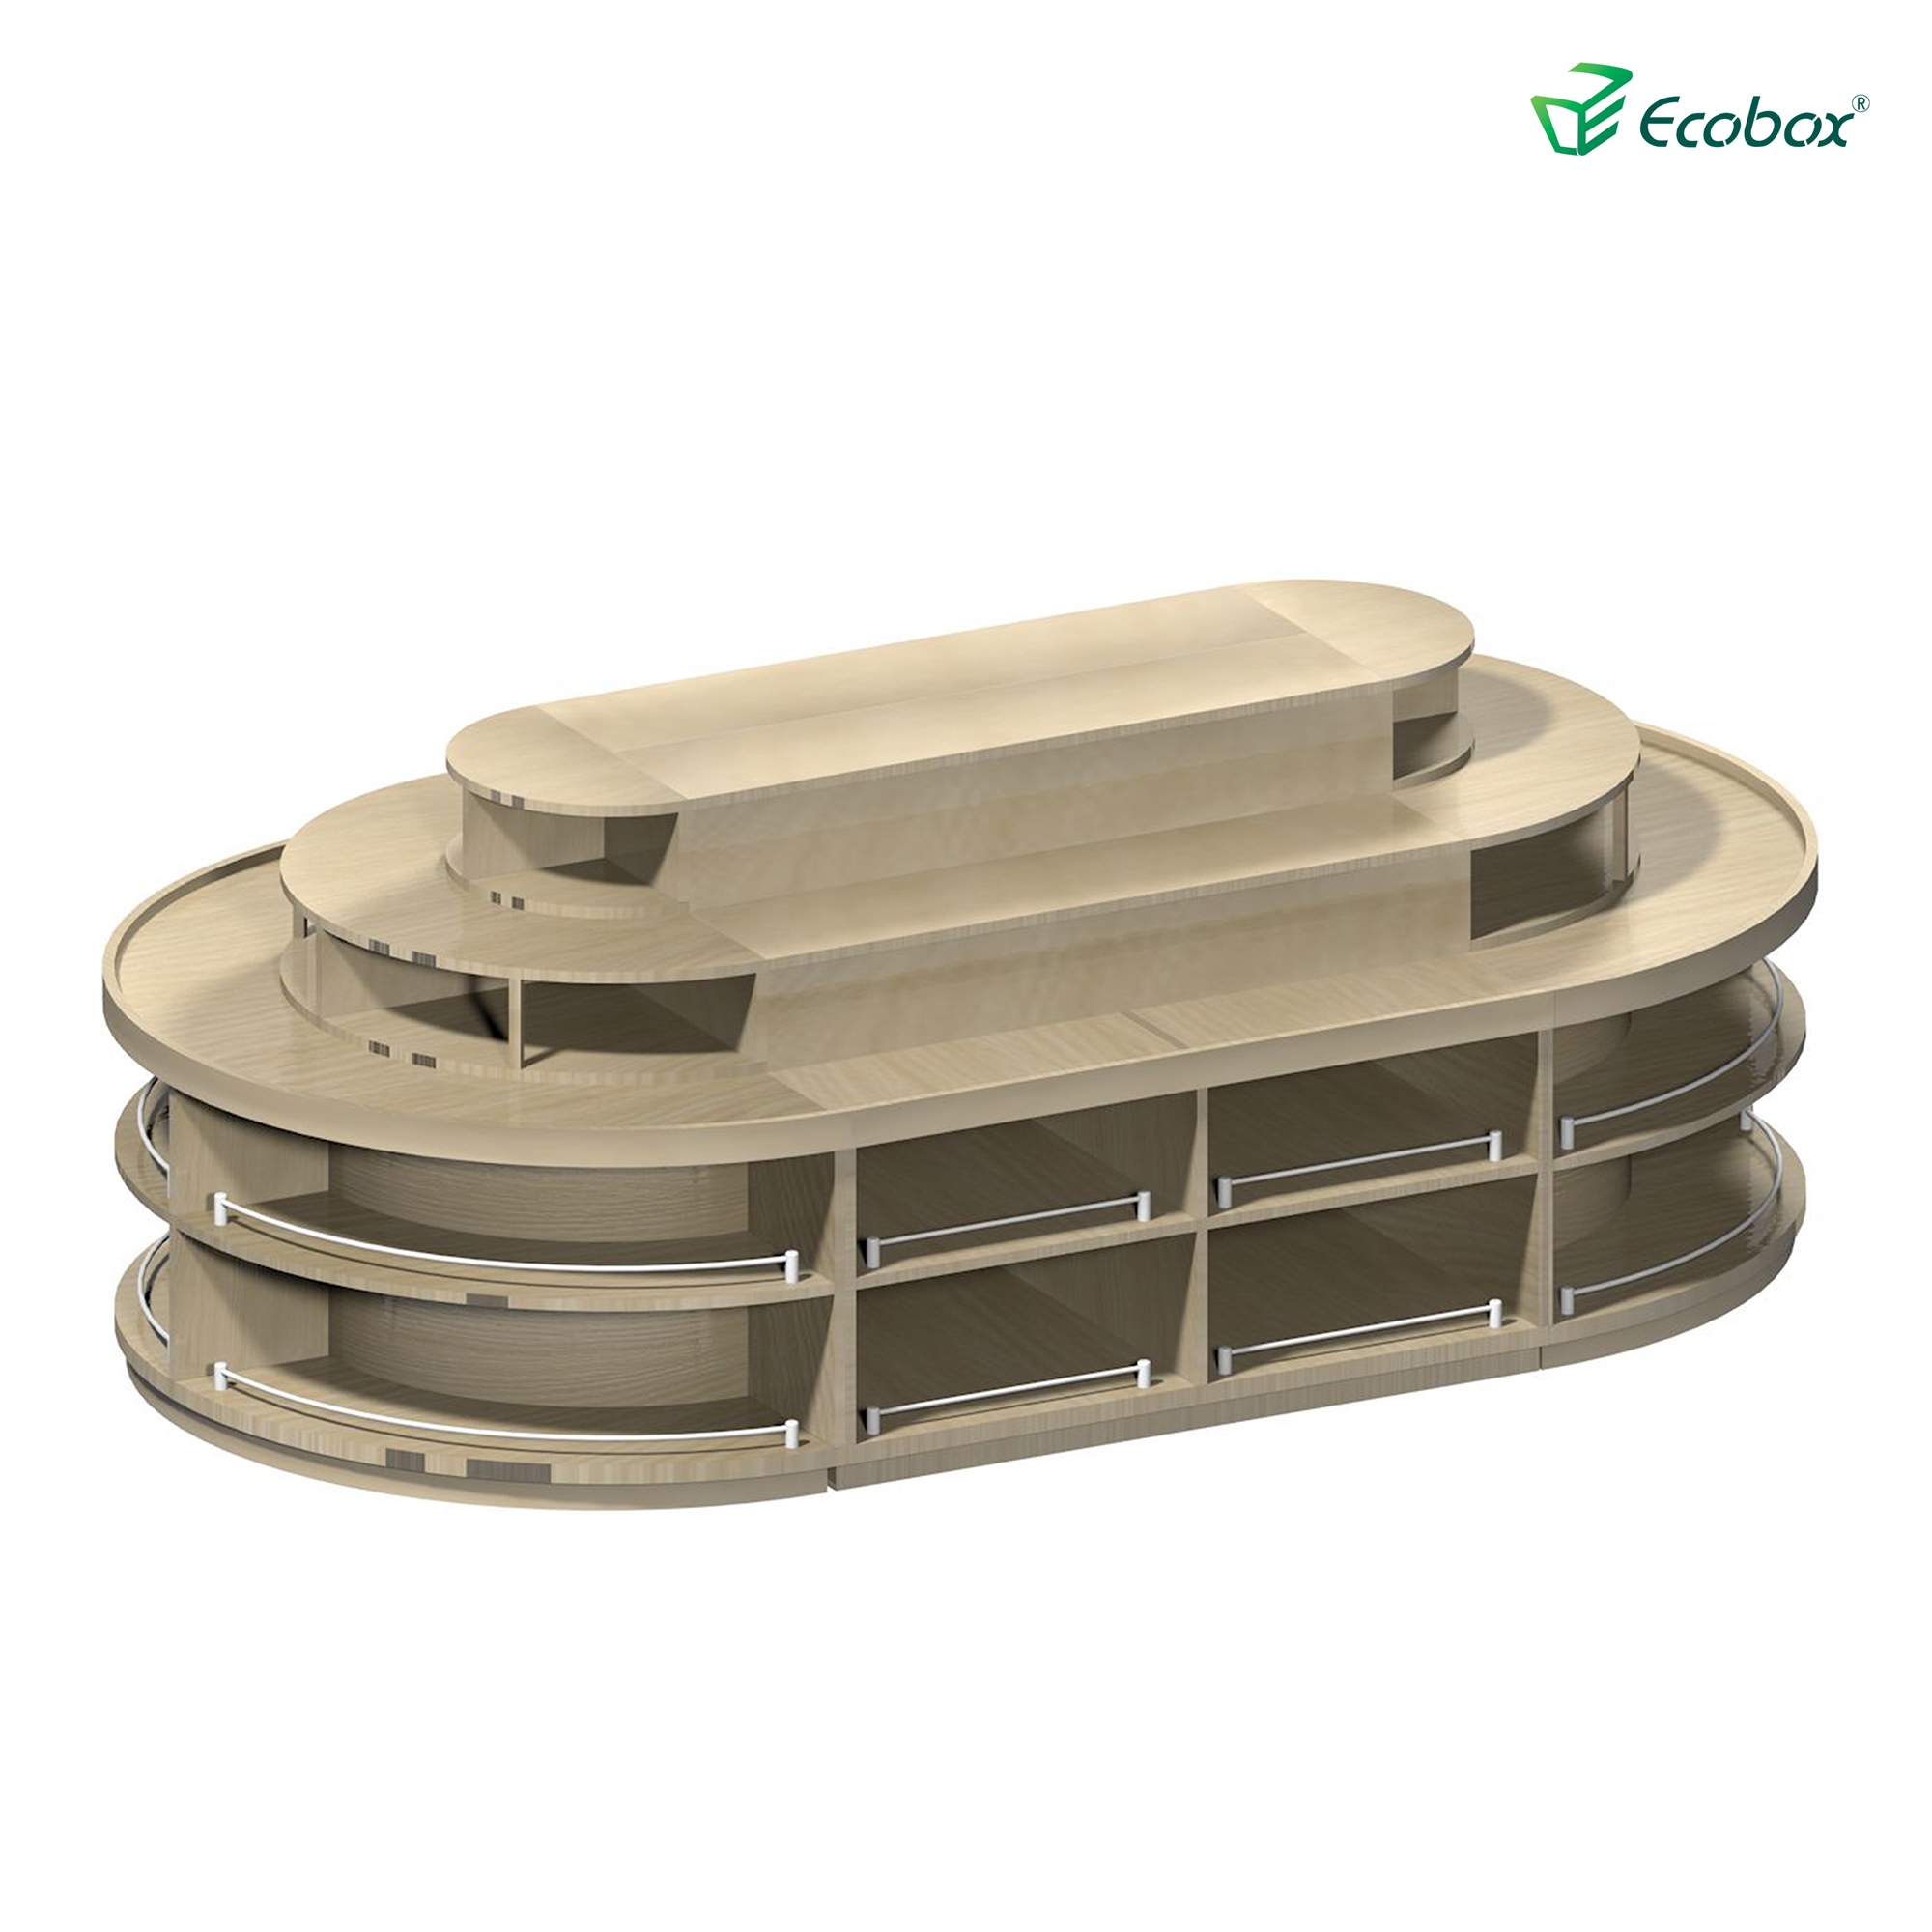 ECOBOX G001 Series Rund-Regal mit Ecobox-Bulk-Bins Supermarkt-Bulk-Food-Anzeigen